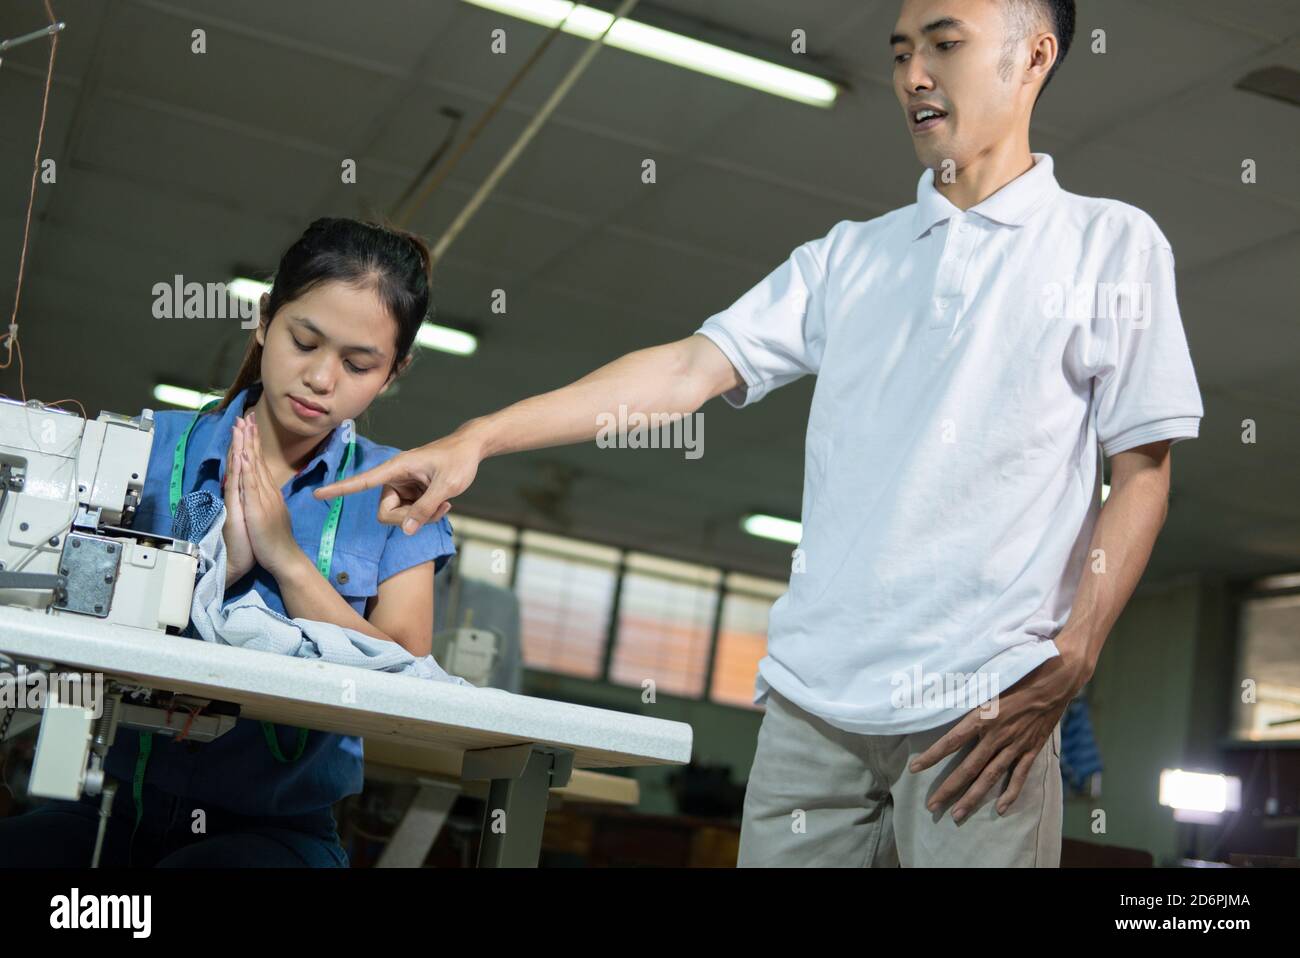 el supervisor masculino con una mano señalante reprides a un sastre femenino por cometer un error Foto de stock